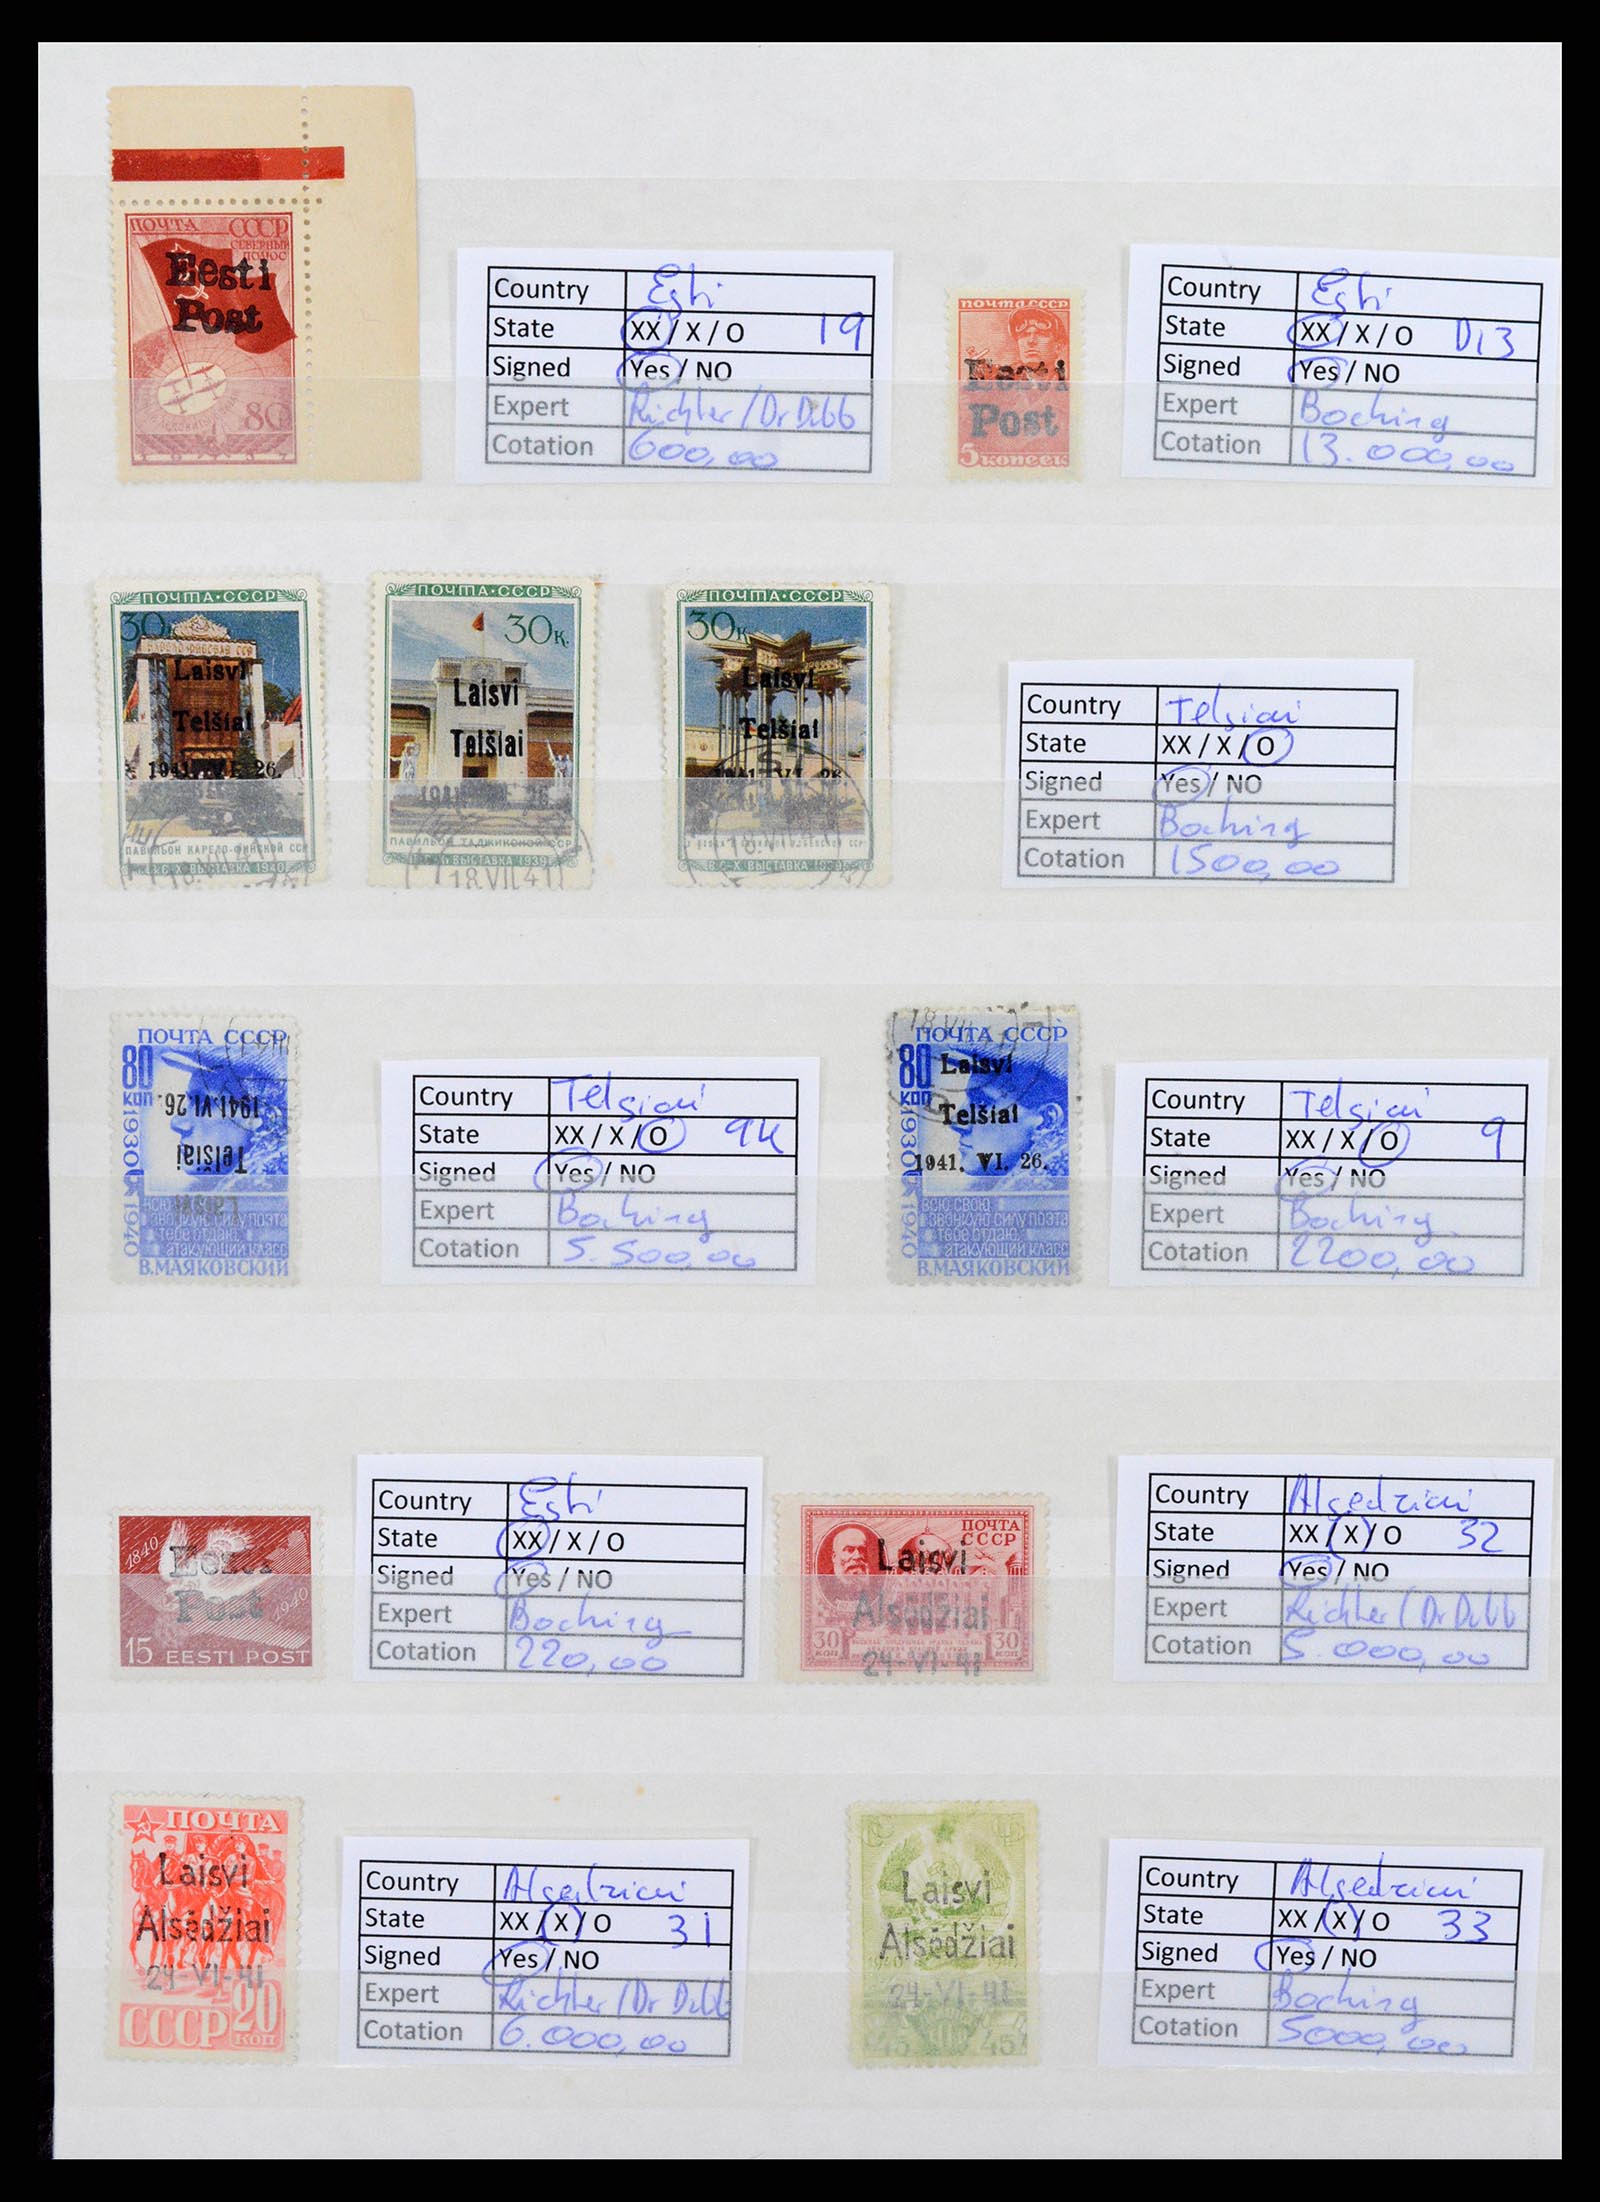 37690 004 - Stamp collection 37690 German occupation 2nd worldwar 1939-1945.